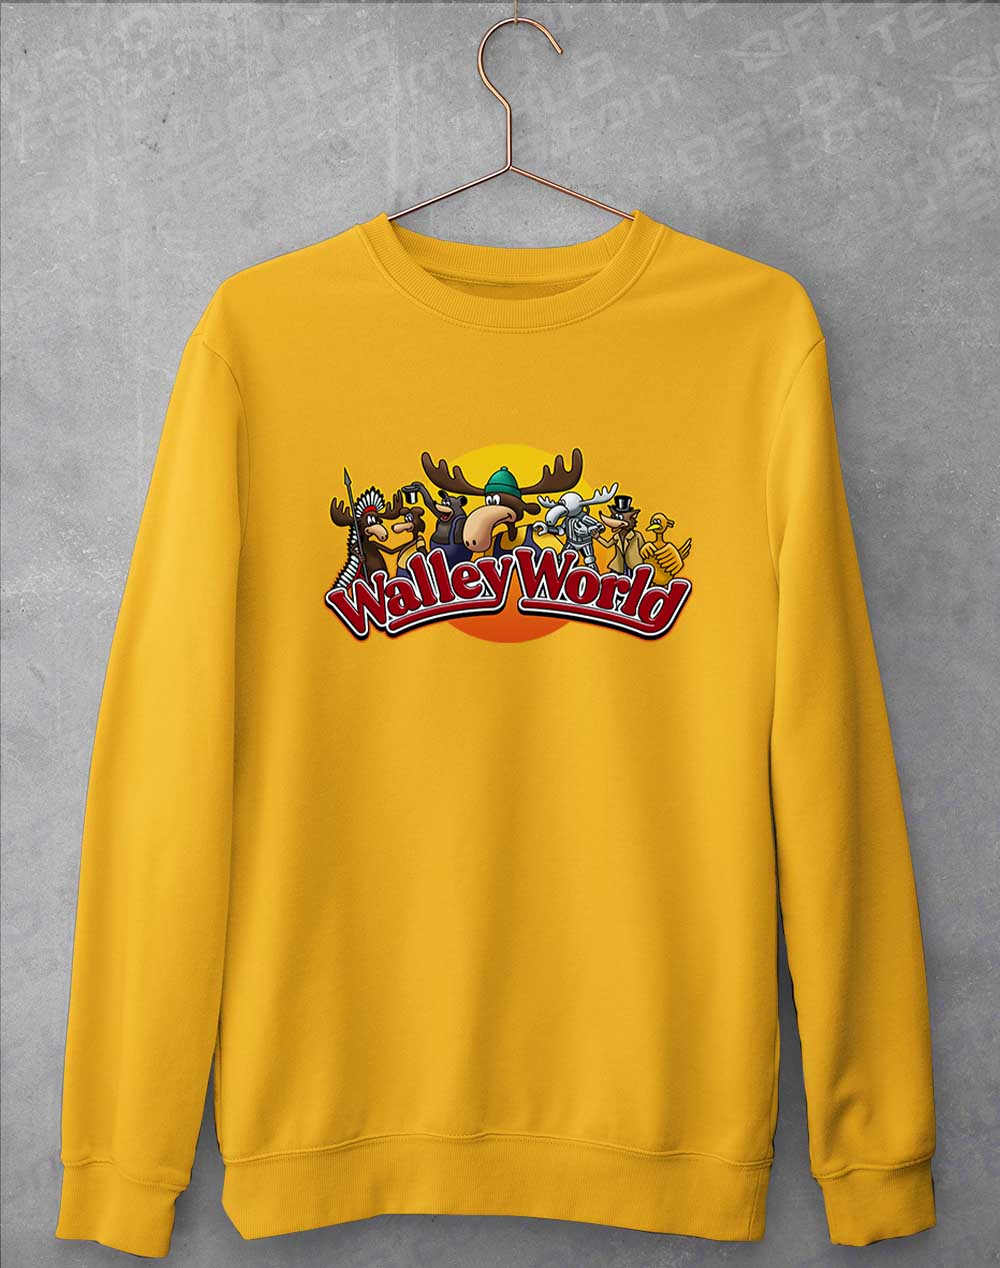 Gold - Walley World Sweatshirt